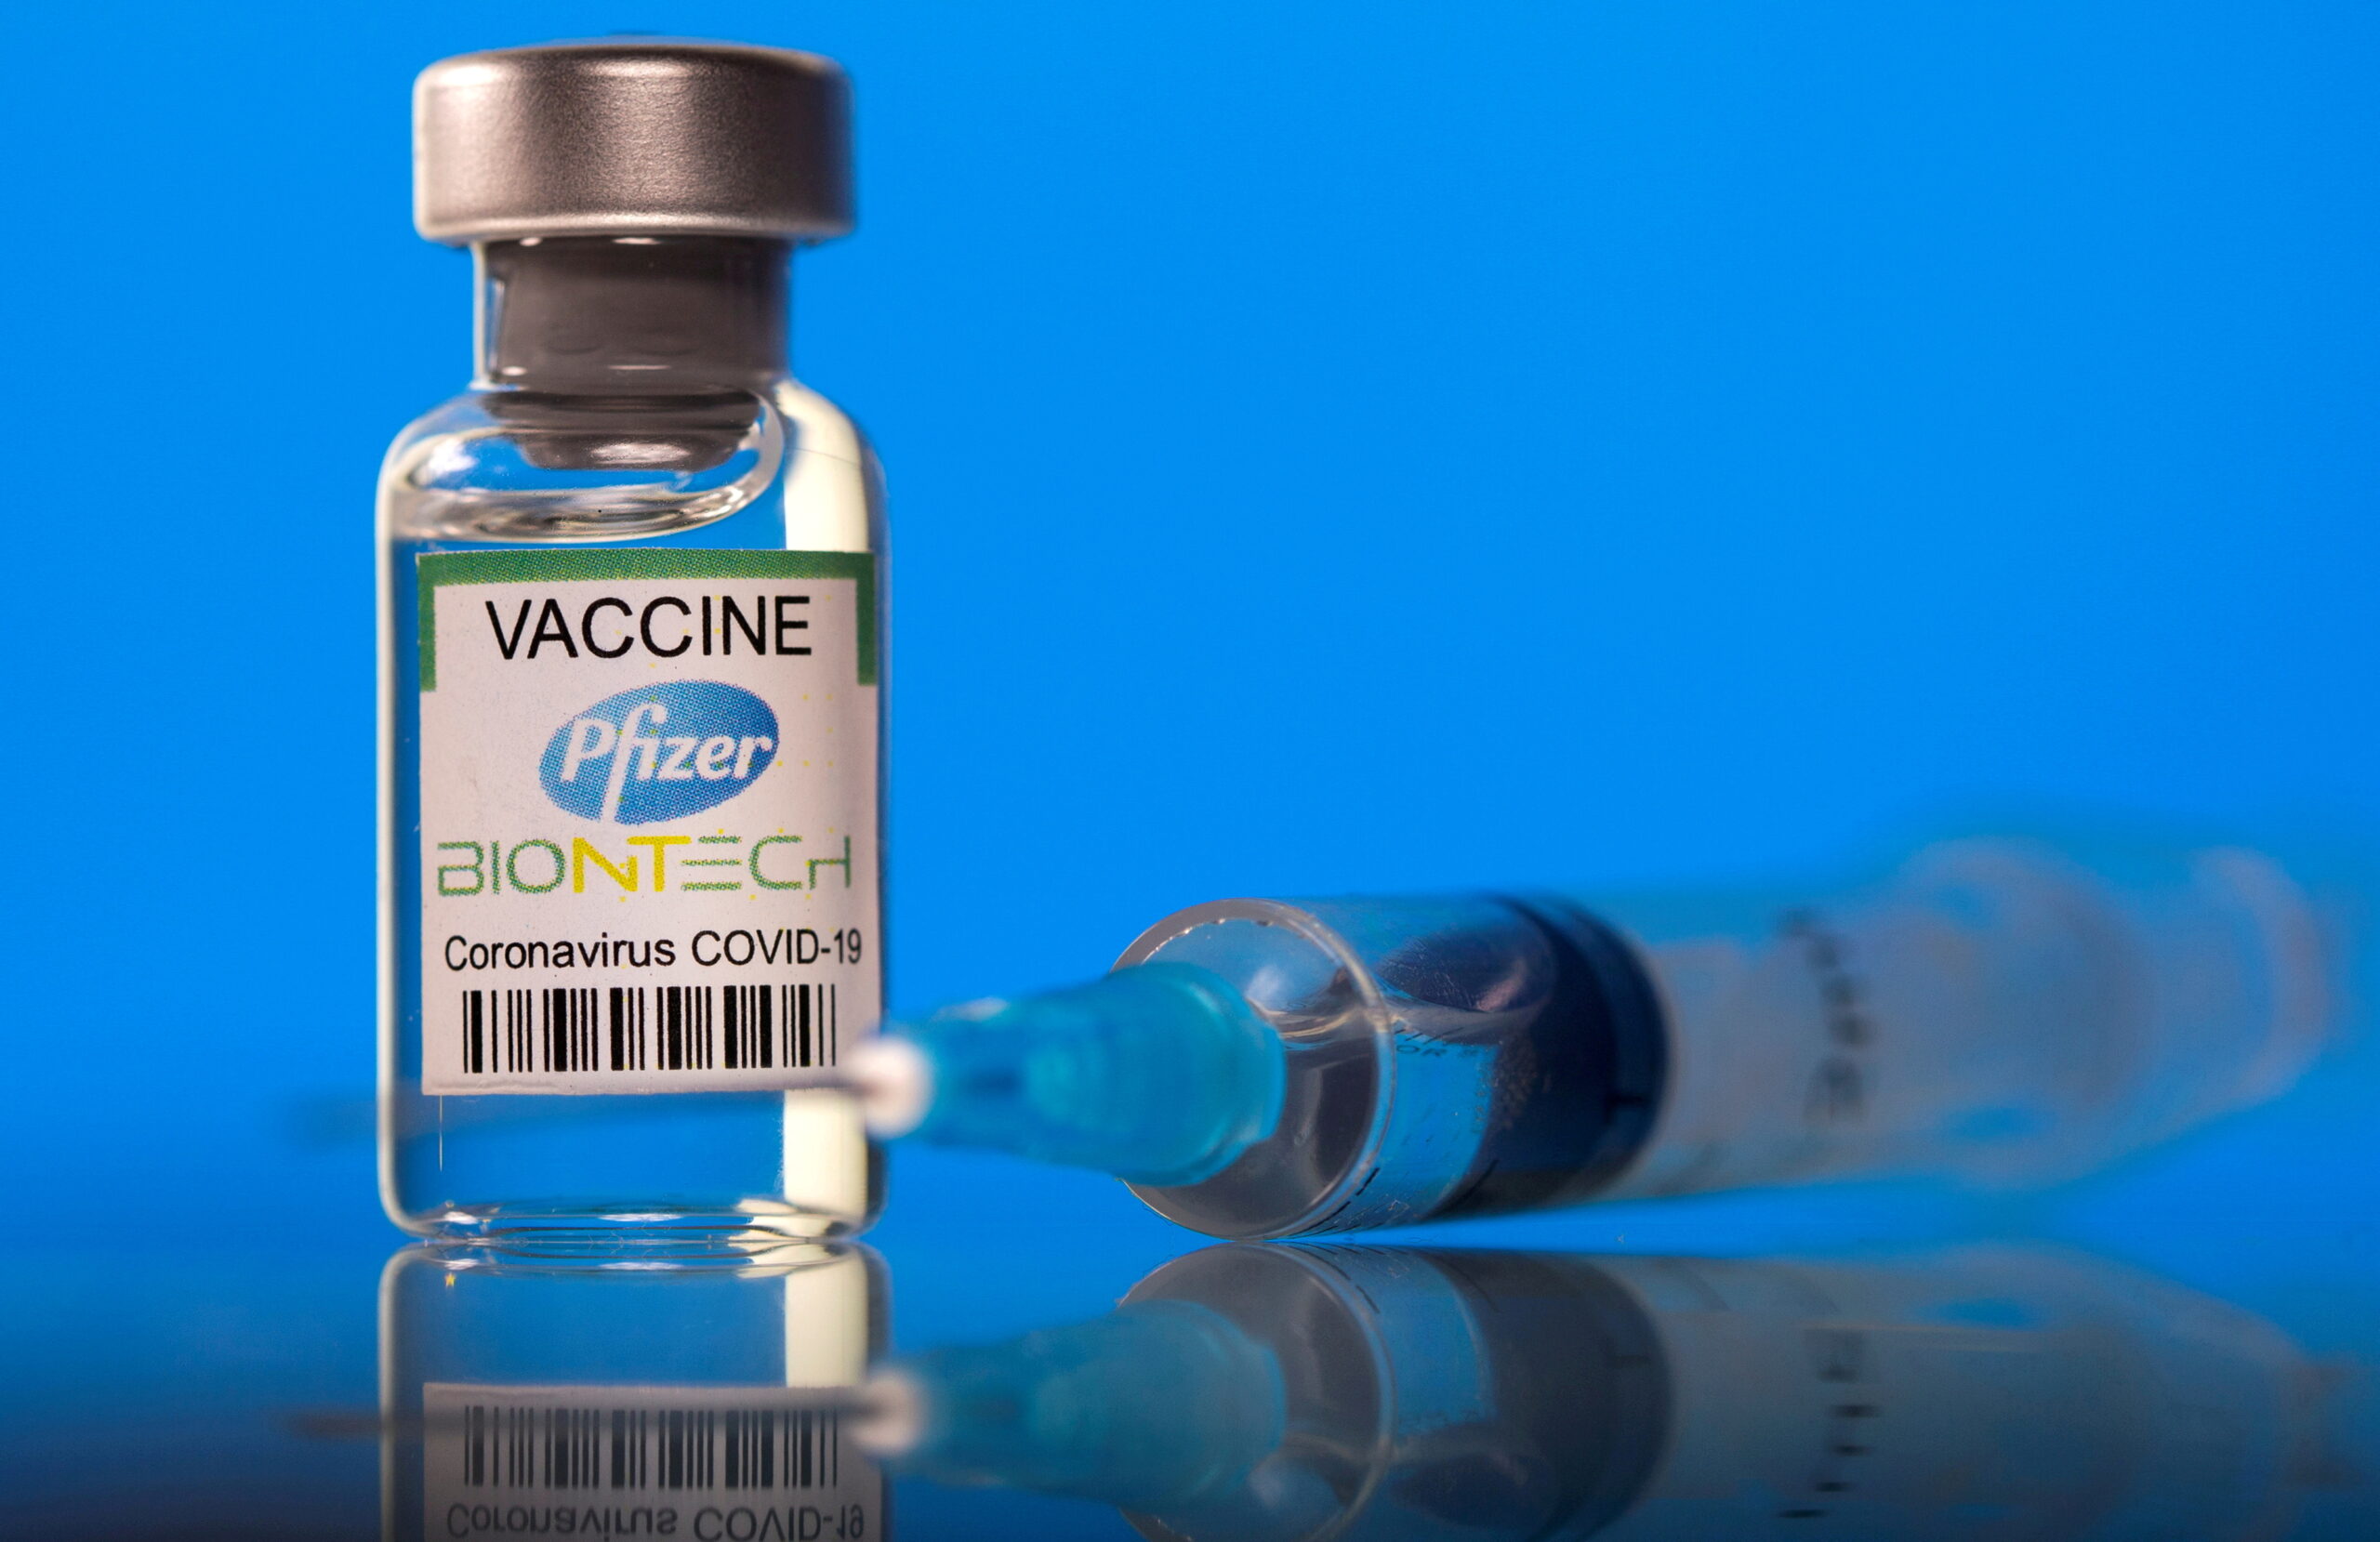 อย.สหรัฐจ่ออนุมัติ วัคซีนไฟเซอร์ เต็มรูปแบบ 23 สิงหาคมนี้ – ต่างประเทศ